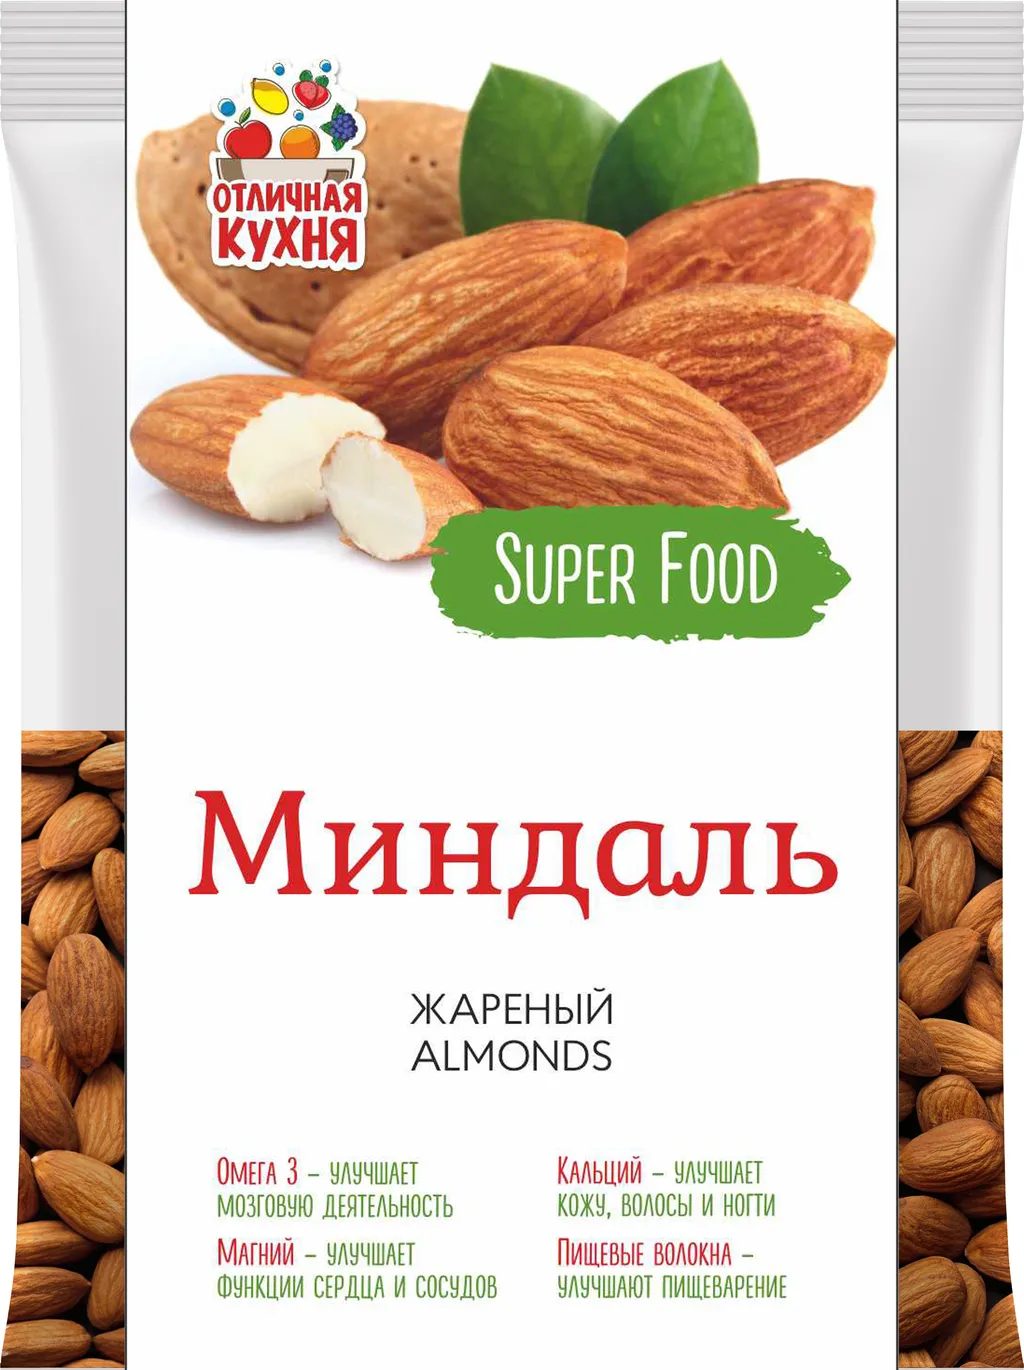 орехи, сухофрукты в Челябинске и Челябинской области 3